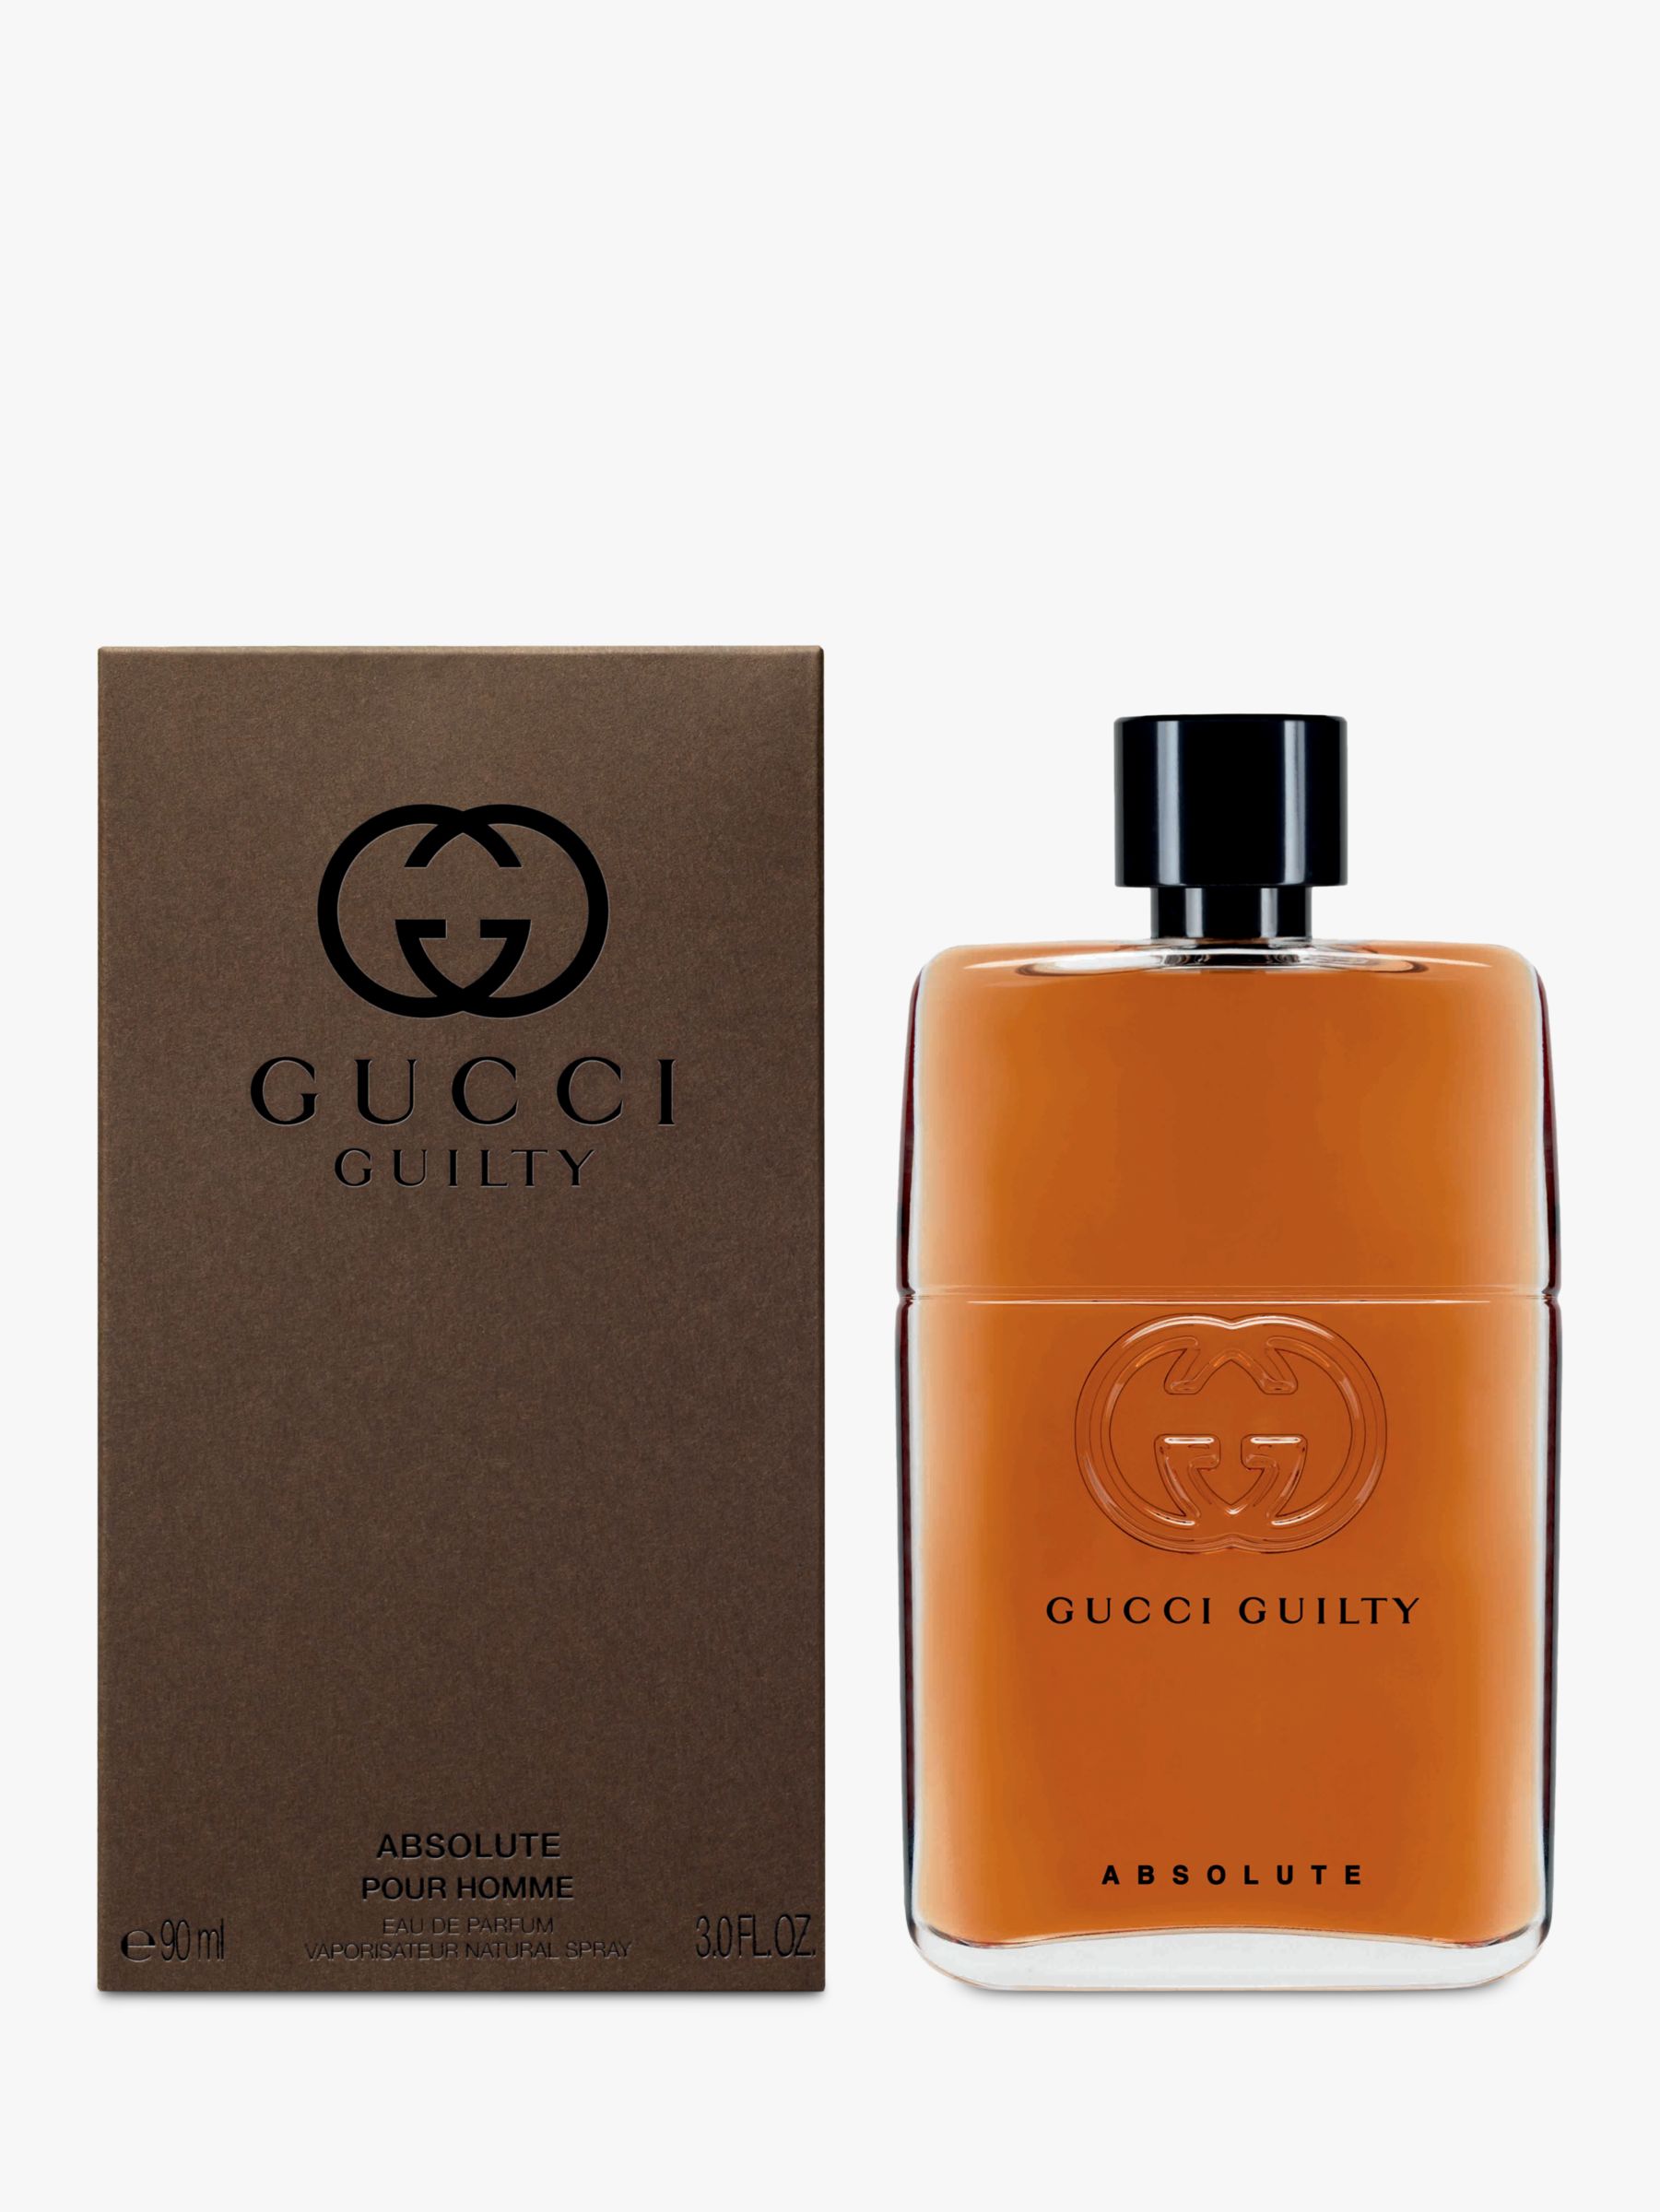 Gucci Guilty Absolute Eau de Parfum for 